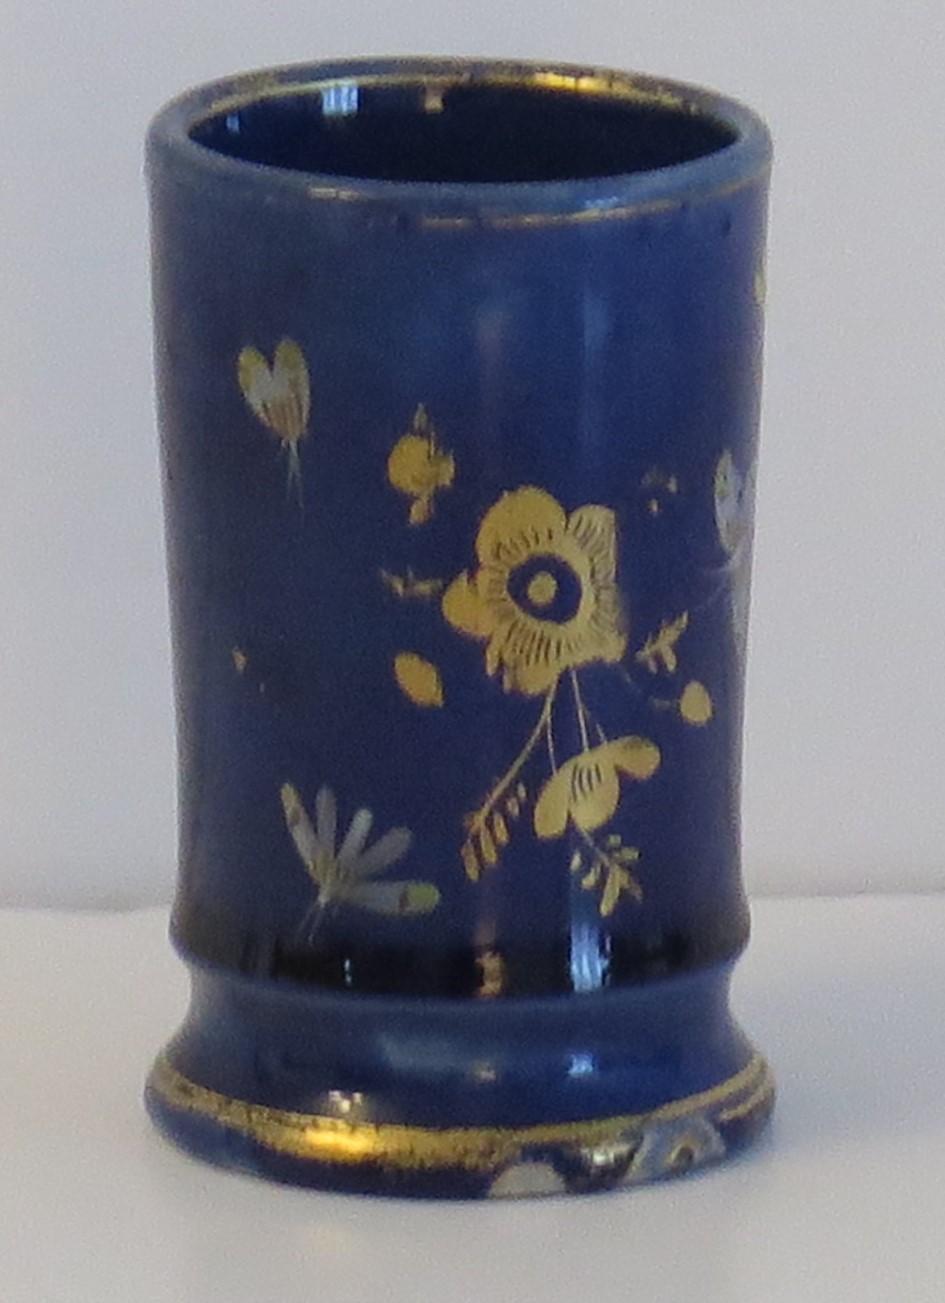 Il s'agit d'un petit vase renversé, peint à la main dans un motif de fleurs, d'insectes et de papillons dorés sur un fond bleu mazarin, fabriqué par Mason's Ironstone, Lane Delph, Angleterre et datant d'environ 1813-1820.

Le motif est doré et